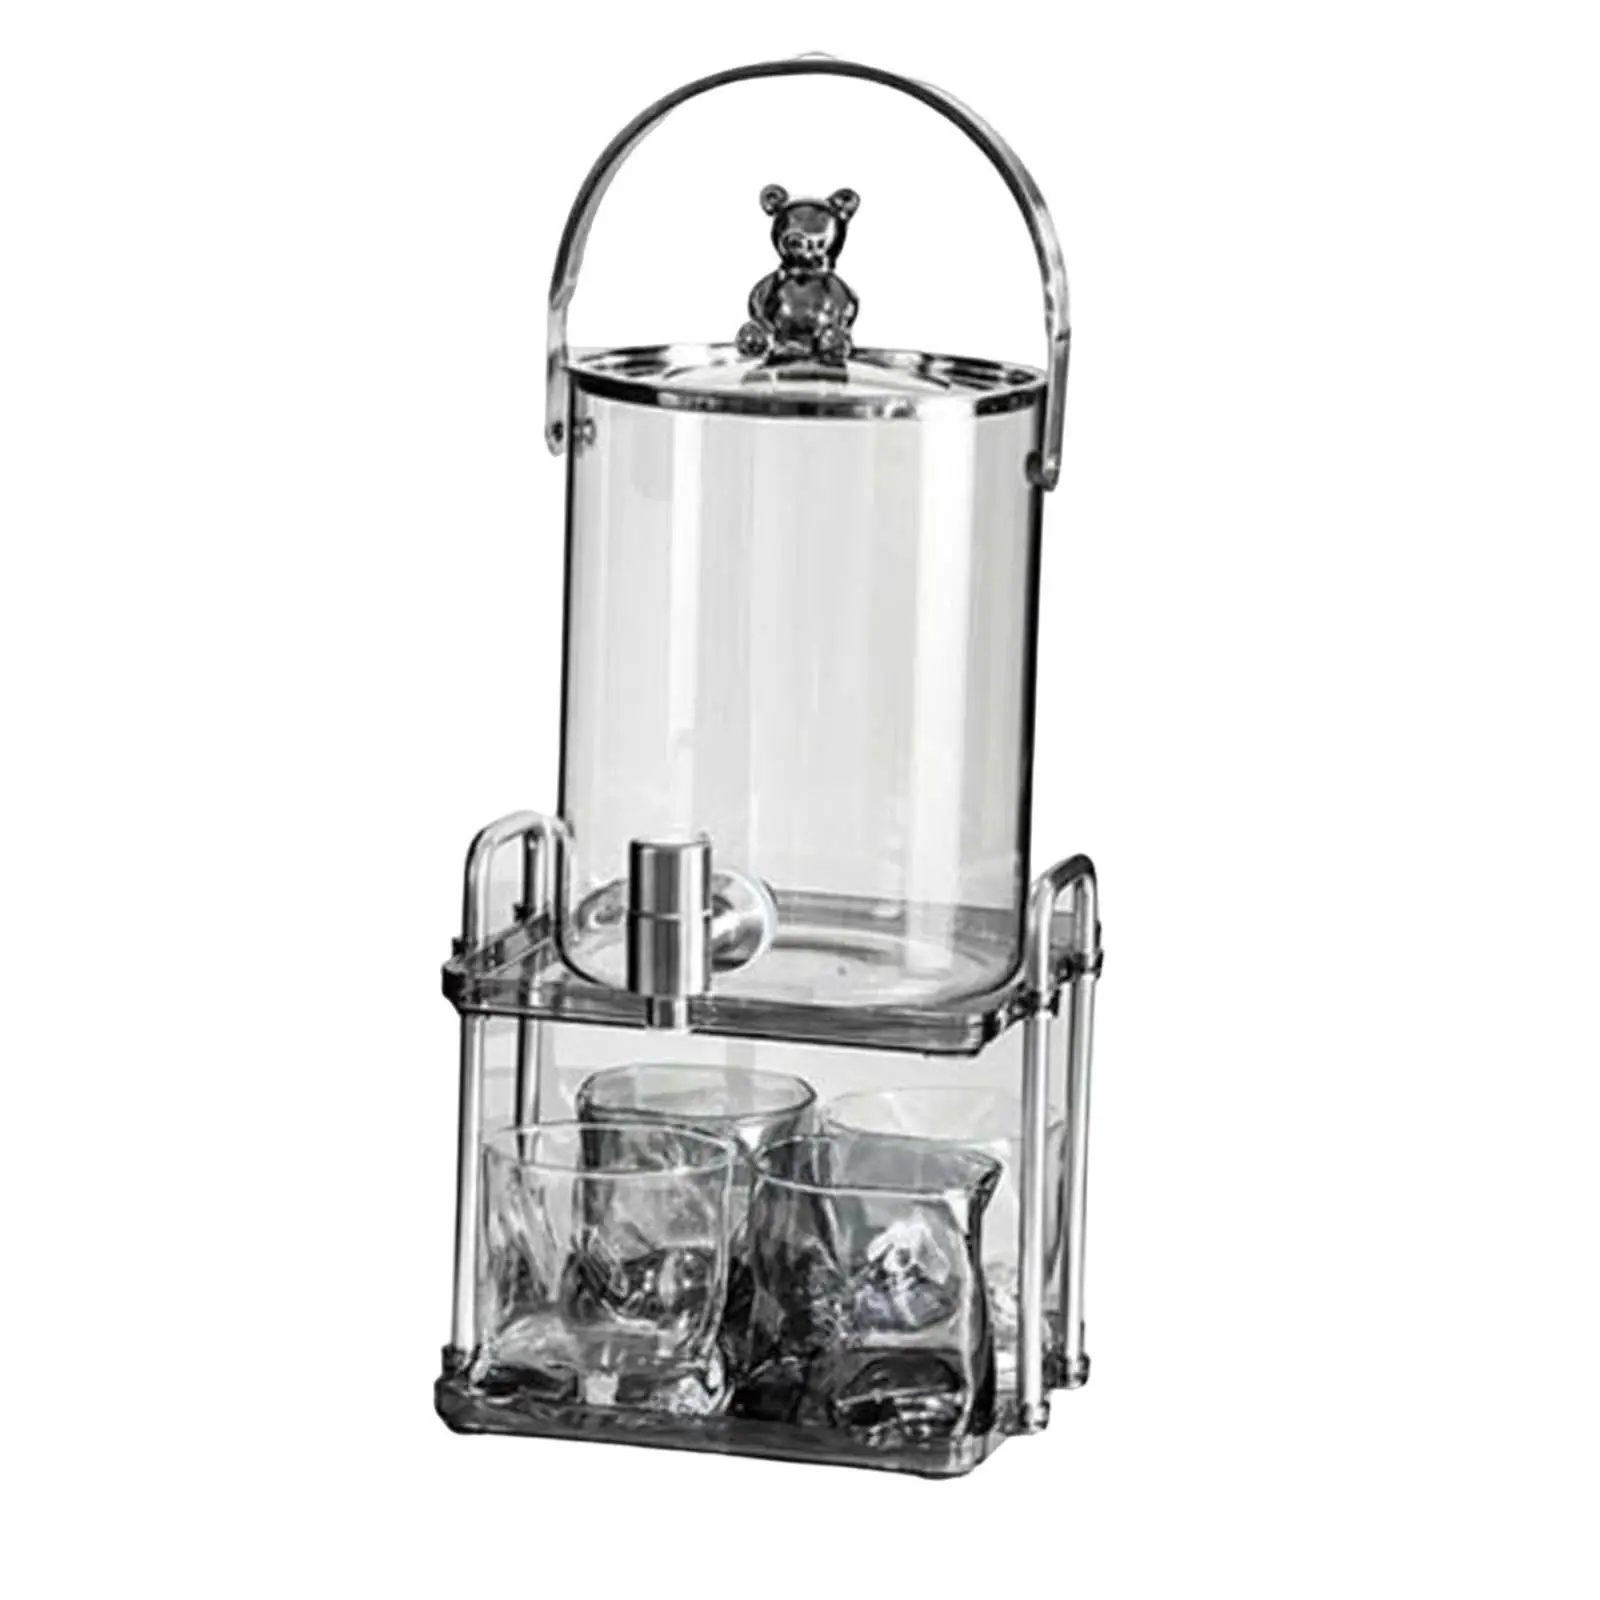 Water Kettle Set with Bracket Large Capacity Juice Jar 3L Iced Beverage Dispenser for Dining Room Home Kitchen Fridge Lemonade